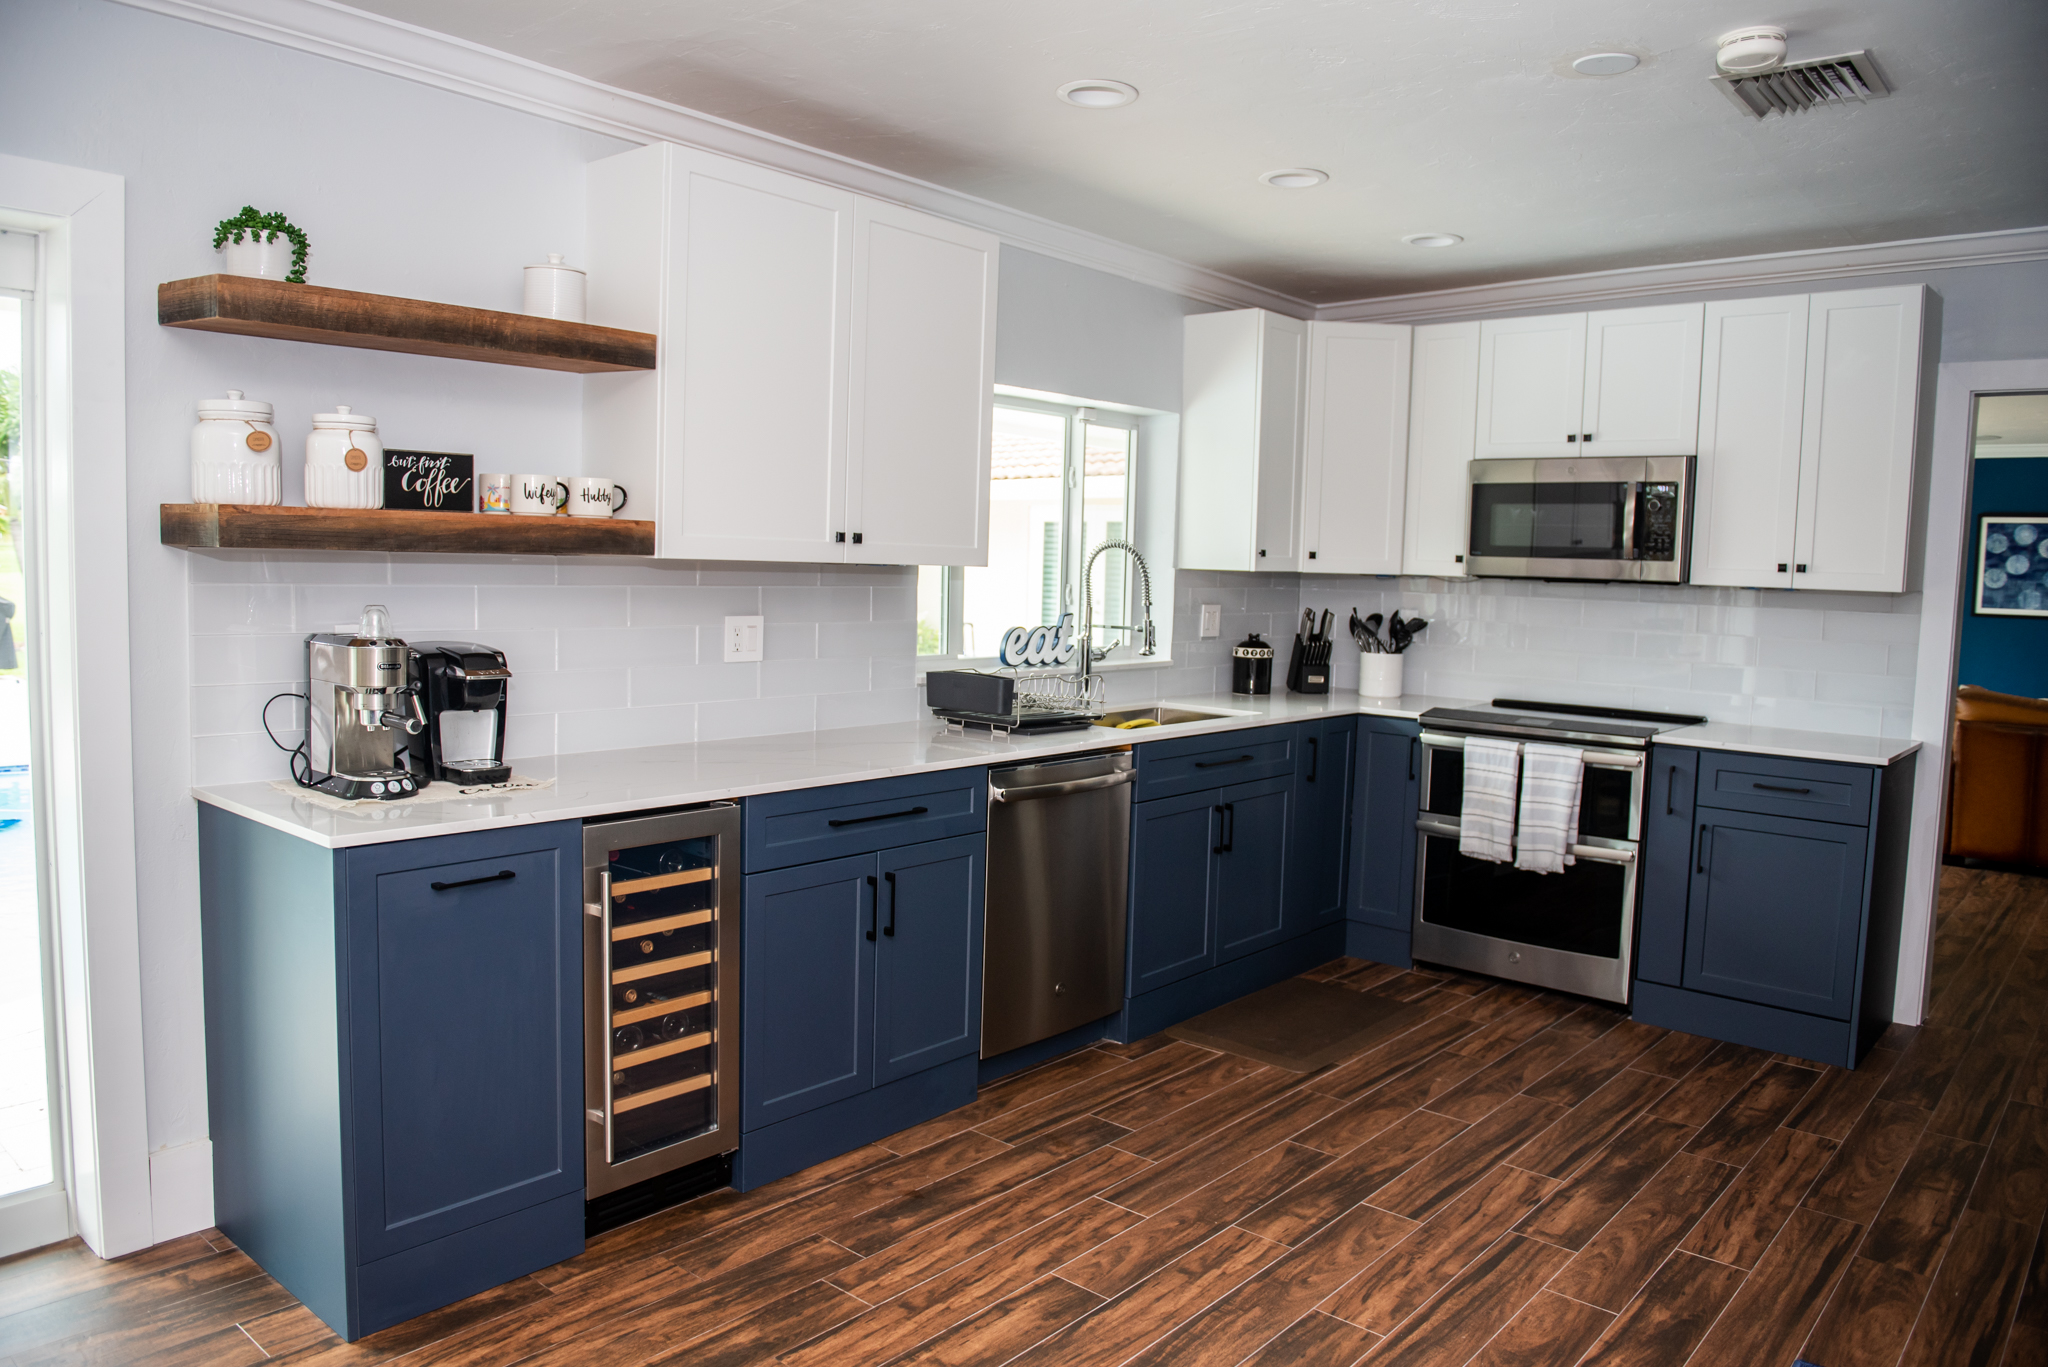 Kitchen Design: Shelving vs. Cabinets?